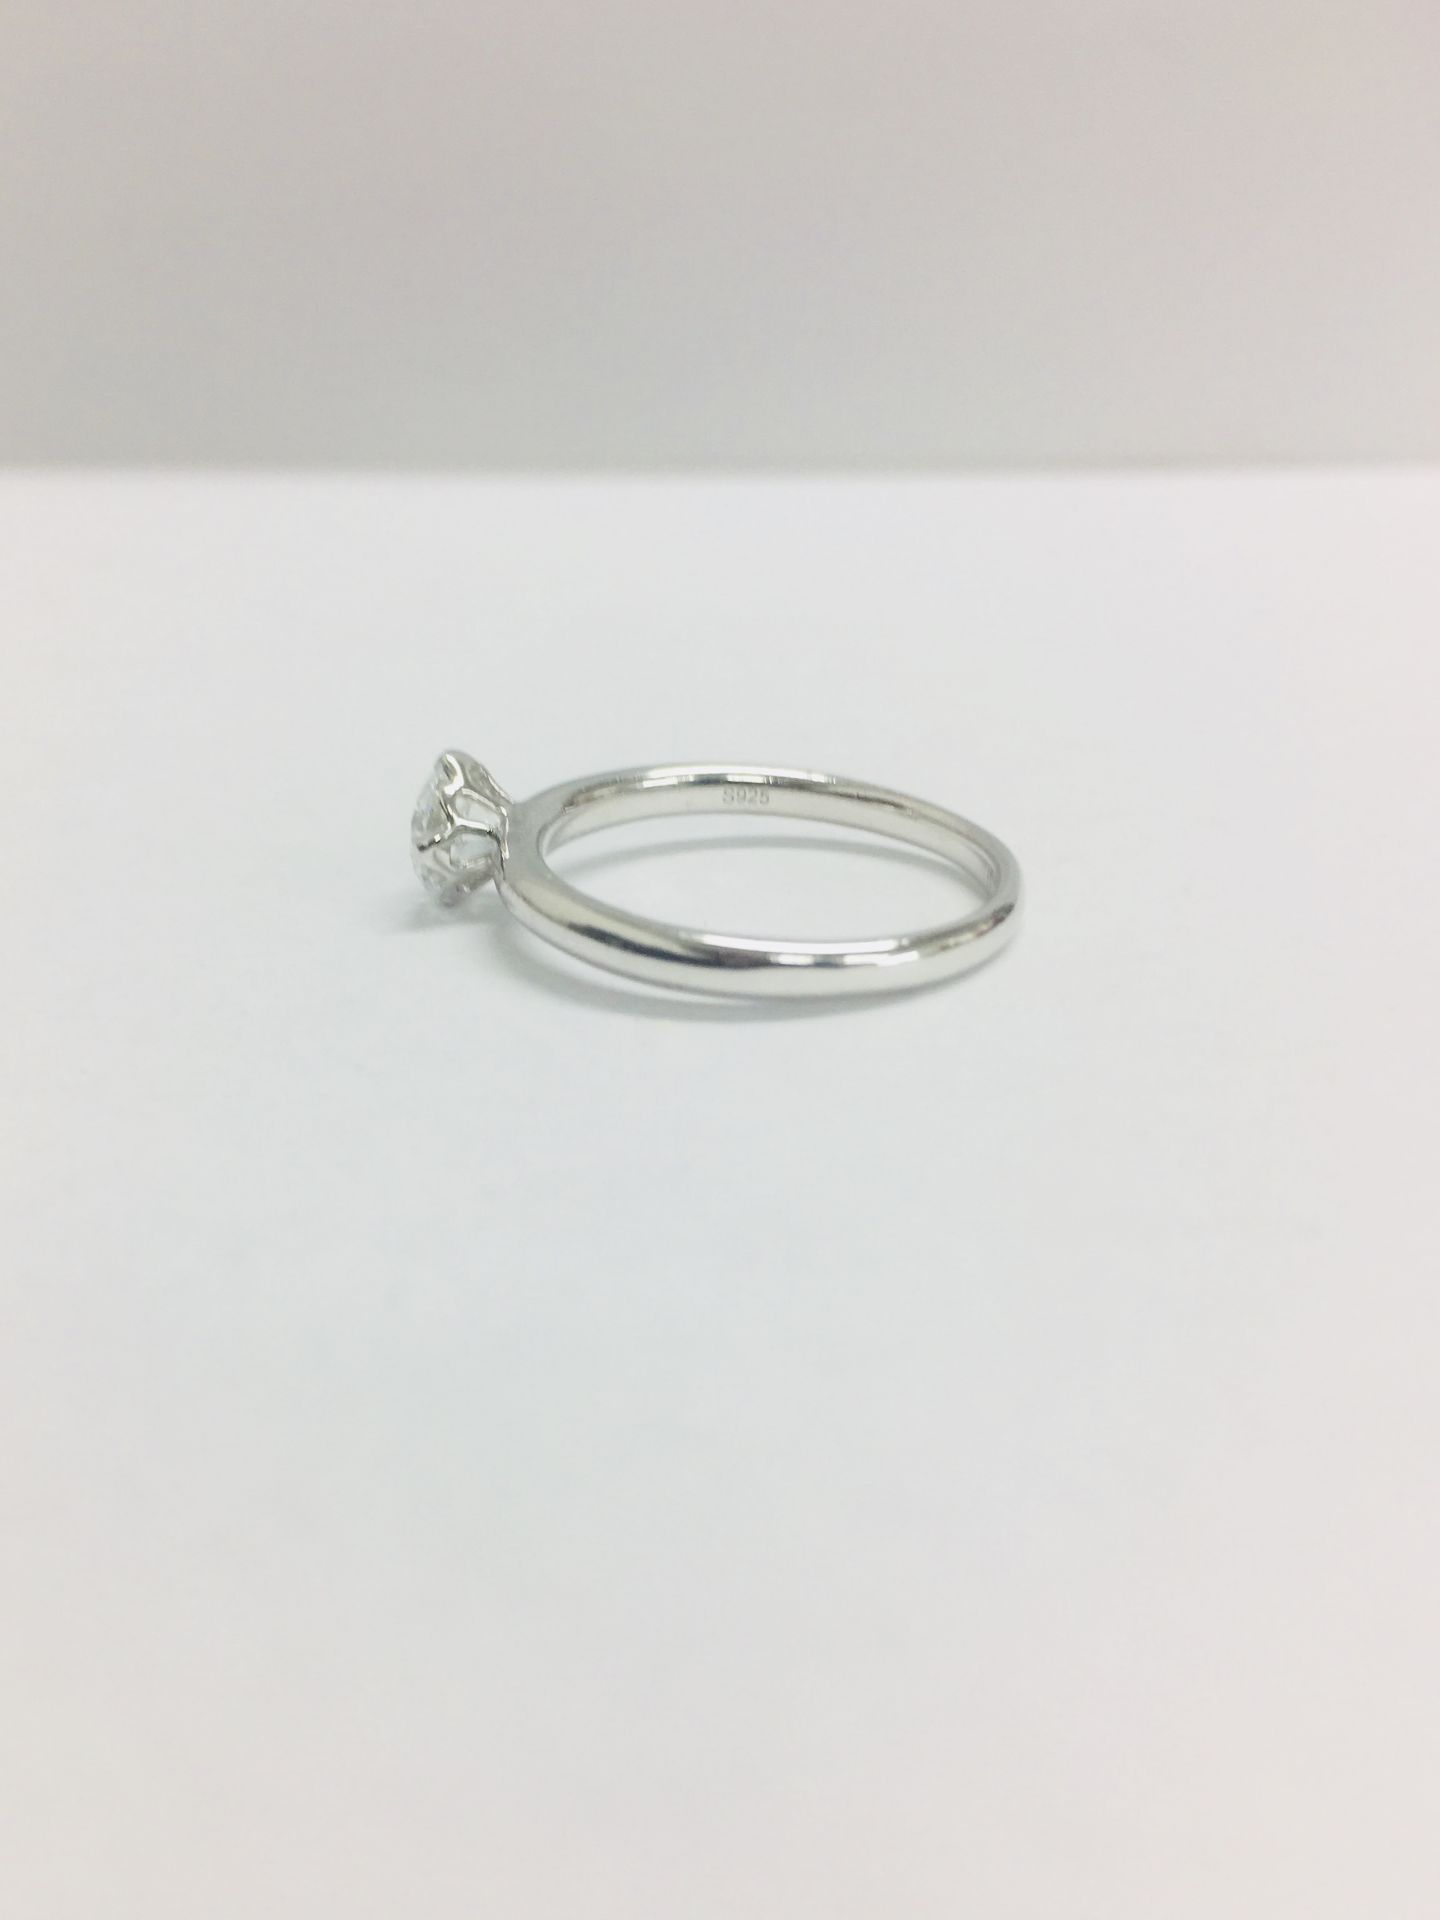 Platinum diamond solitaire ring,0.50ct brillliant cut diamond h colour vs clarity(clarity enhanced), - Bild 4 aus 6